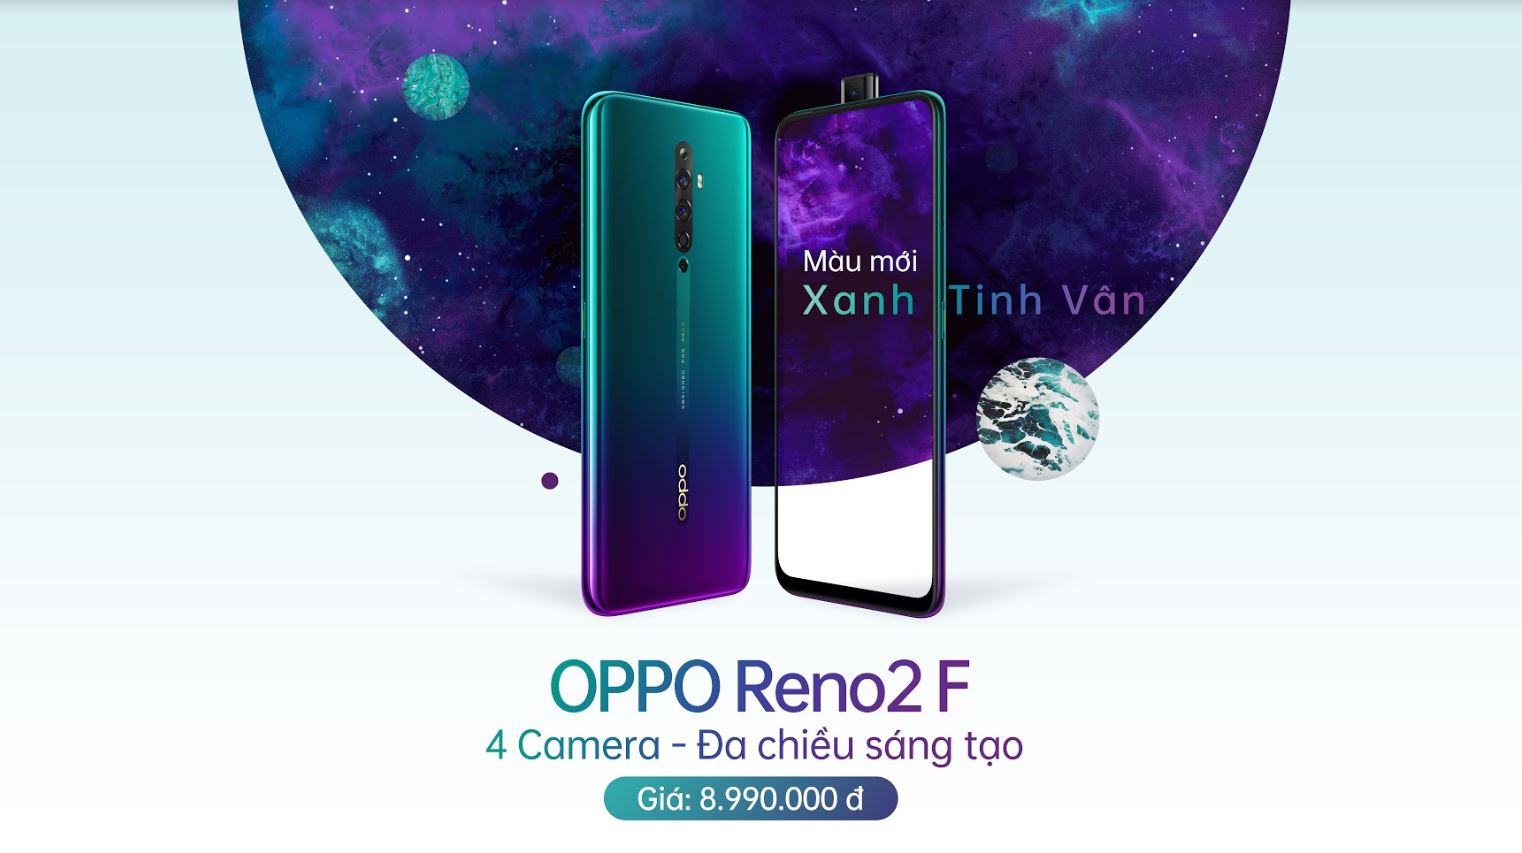 OPPO Reno2 F Xanh Tinh Vân ra mắt thị trường Việt, độc quyền trong 01 tháng tại Thế Giới Di Động